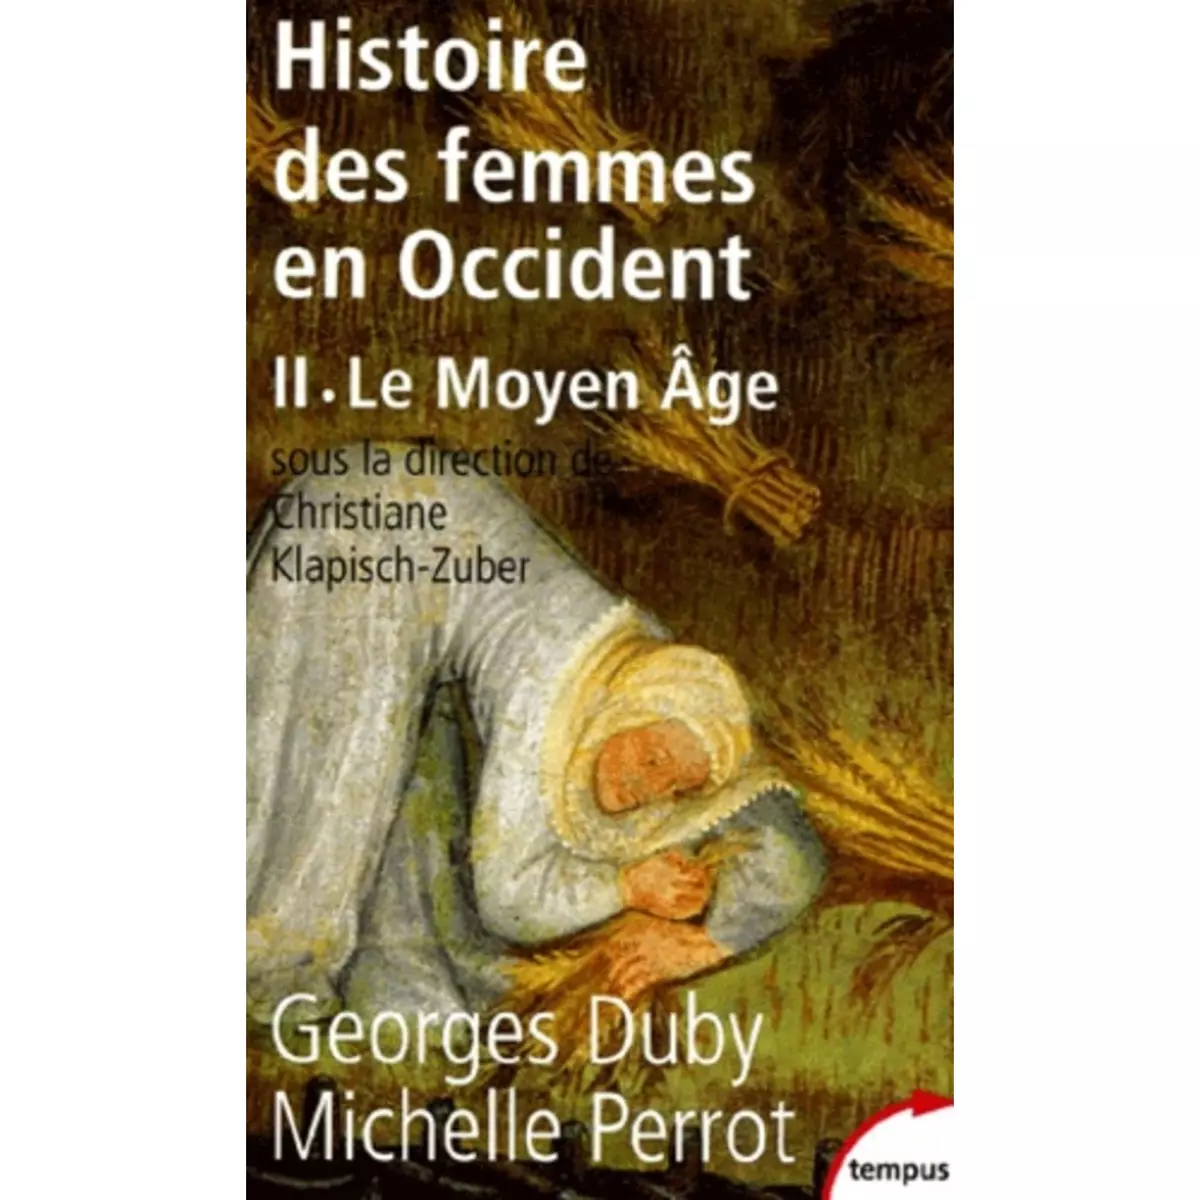  HISTOIRE DES FEMMES EN OCCIDENT. TOME 2, LE MOYEN AGE, Duby Georges